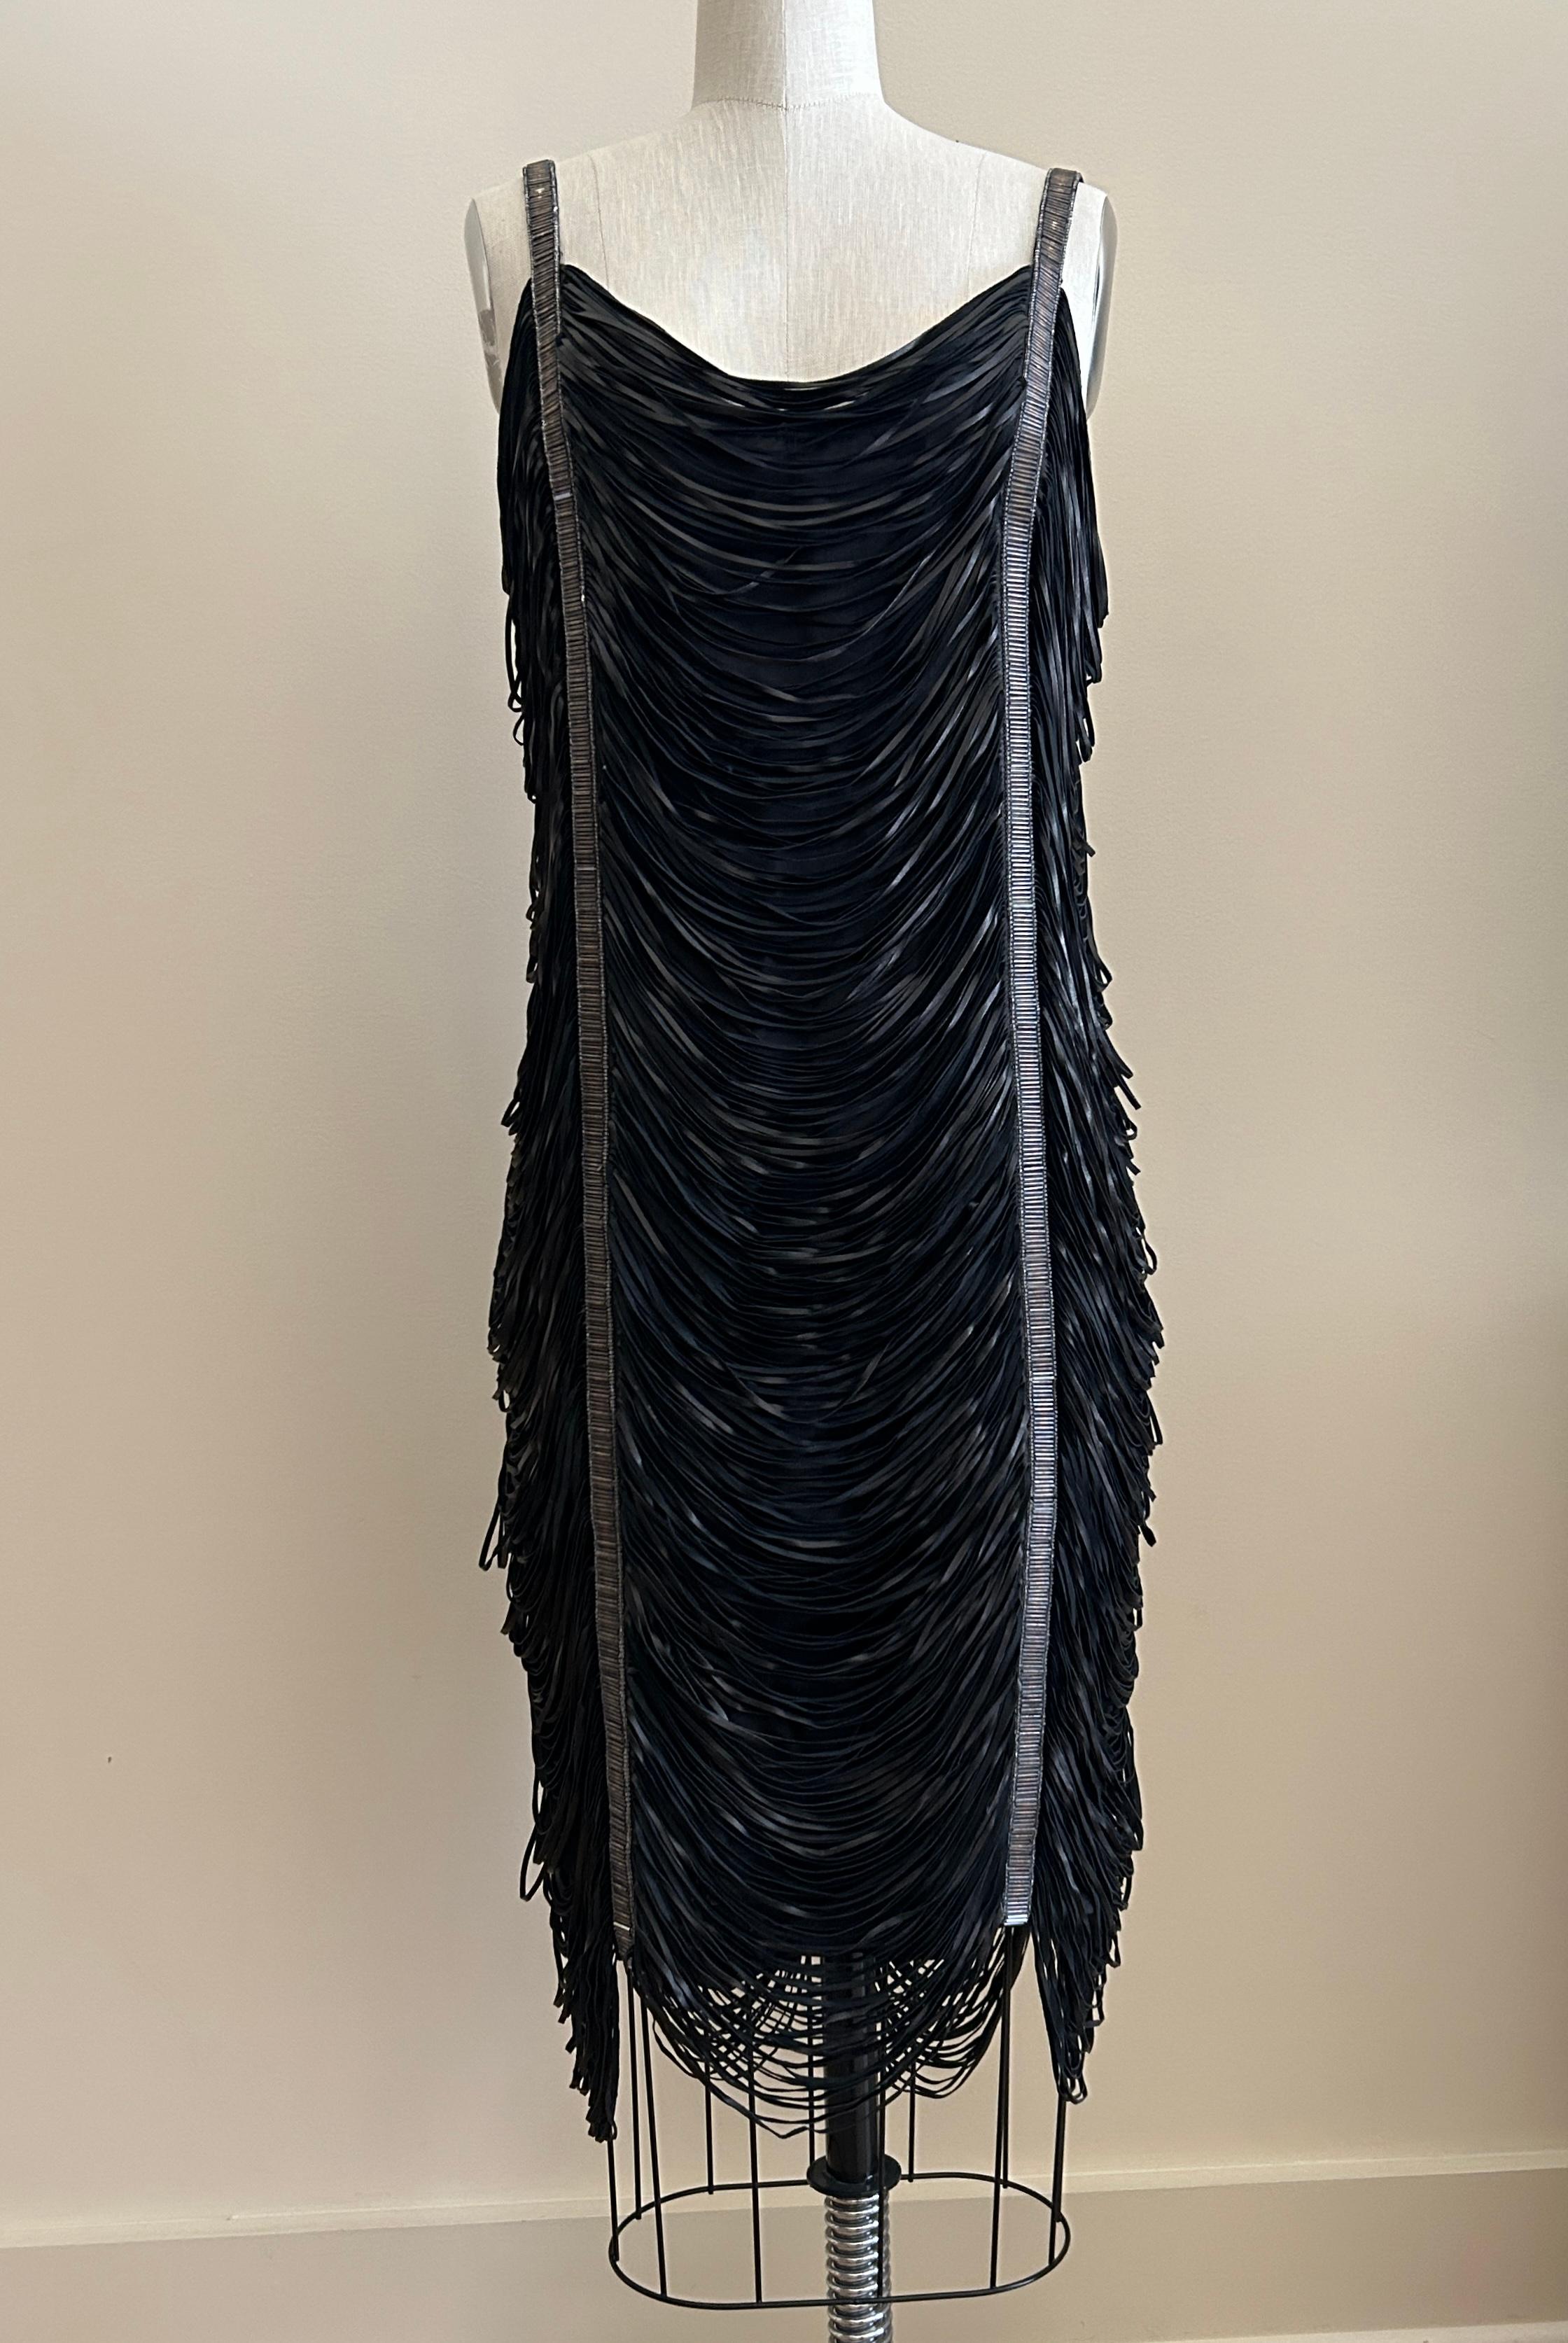 Seltenes Alexander McQueen Vintage 2000s schwarzes Lederfransenkleid mit perlenbesetzten Trägern, die sich über die gesamte Länge des Kleides erstrecken. Tiefes V hinten. Reißverschluss hinten.

Echtes Leder, vollständig gefüttert mit 100%